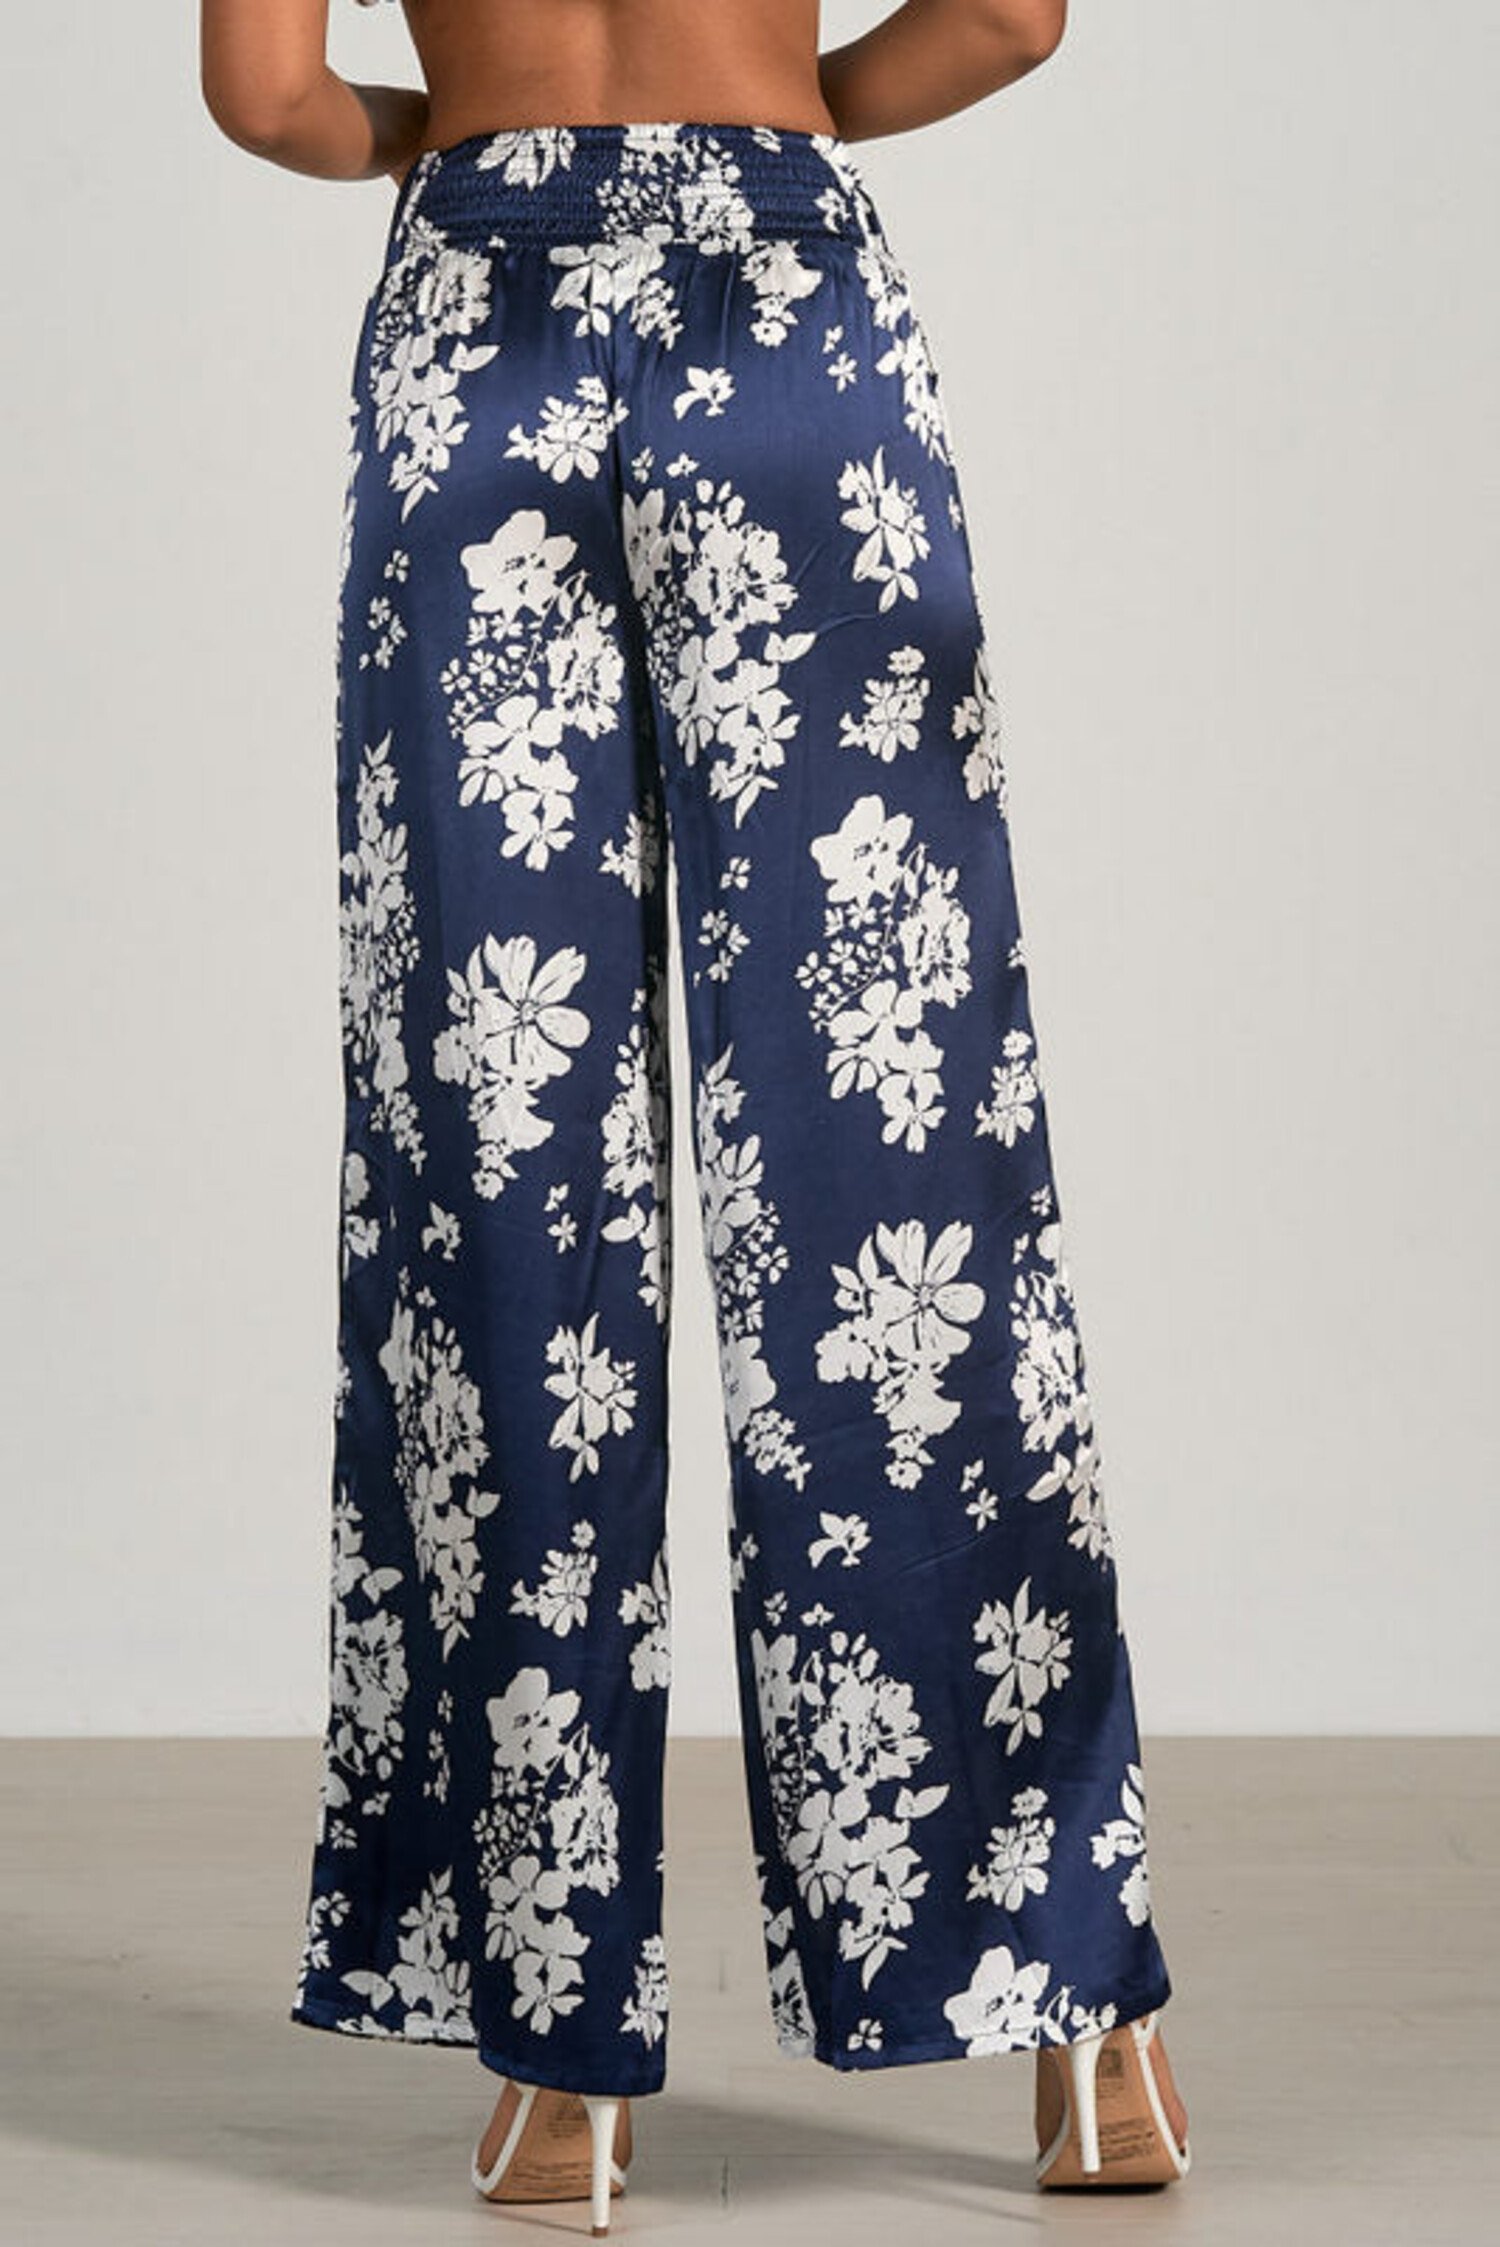 Capri trousers in floral silk - Laboratorio Capri - Manecapri